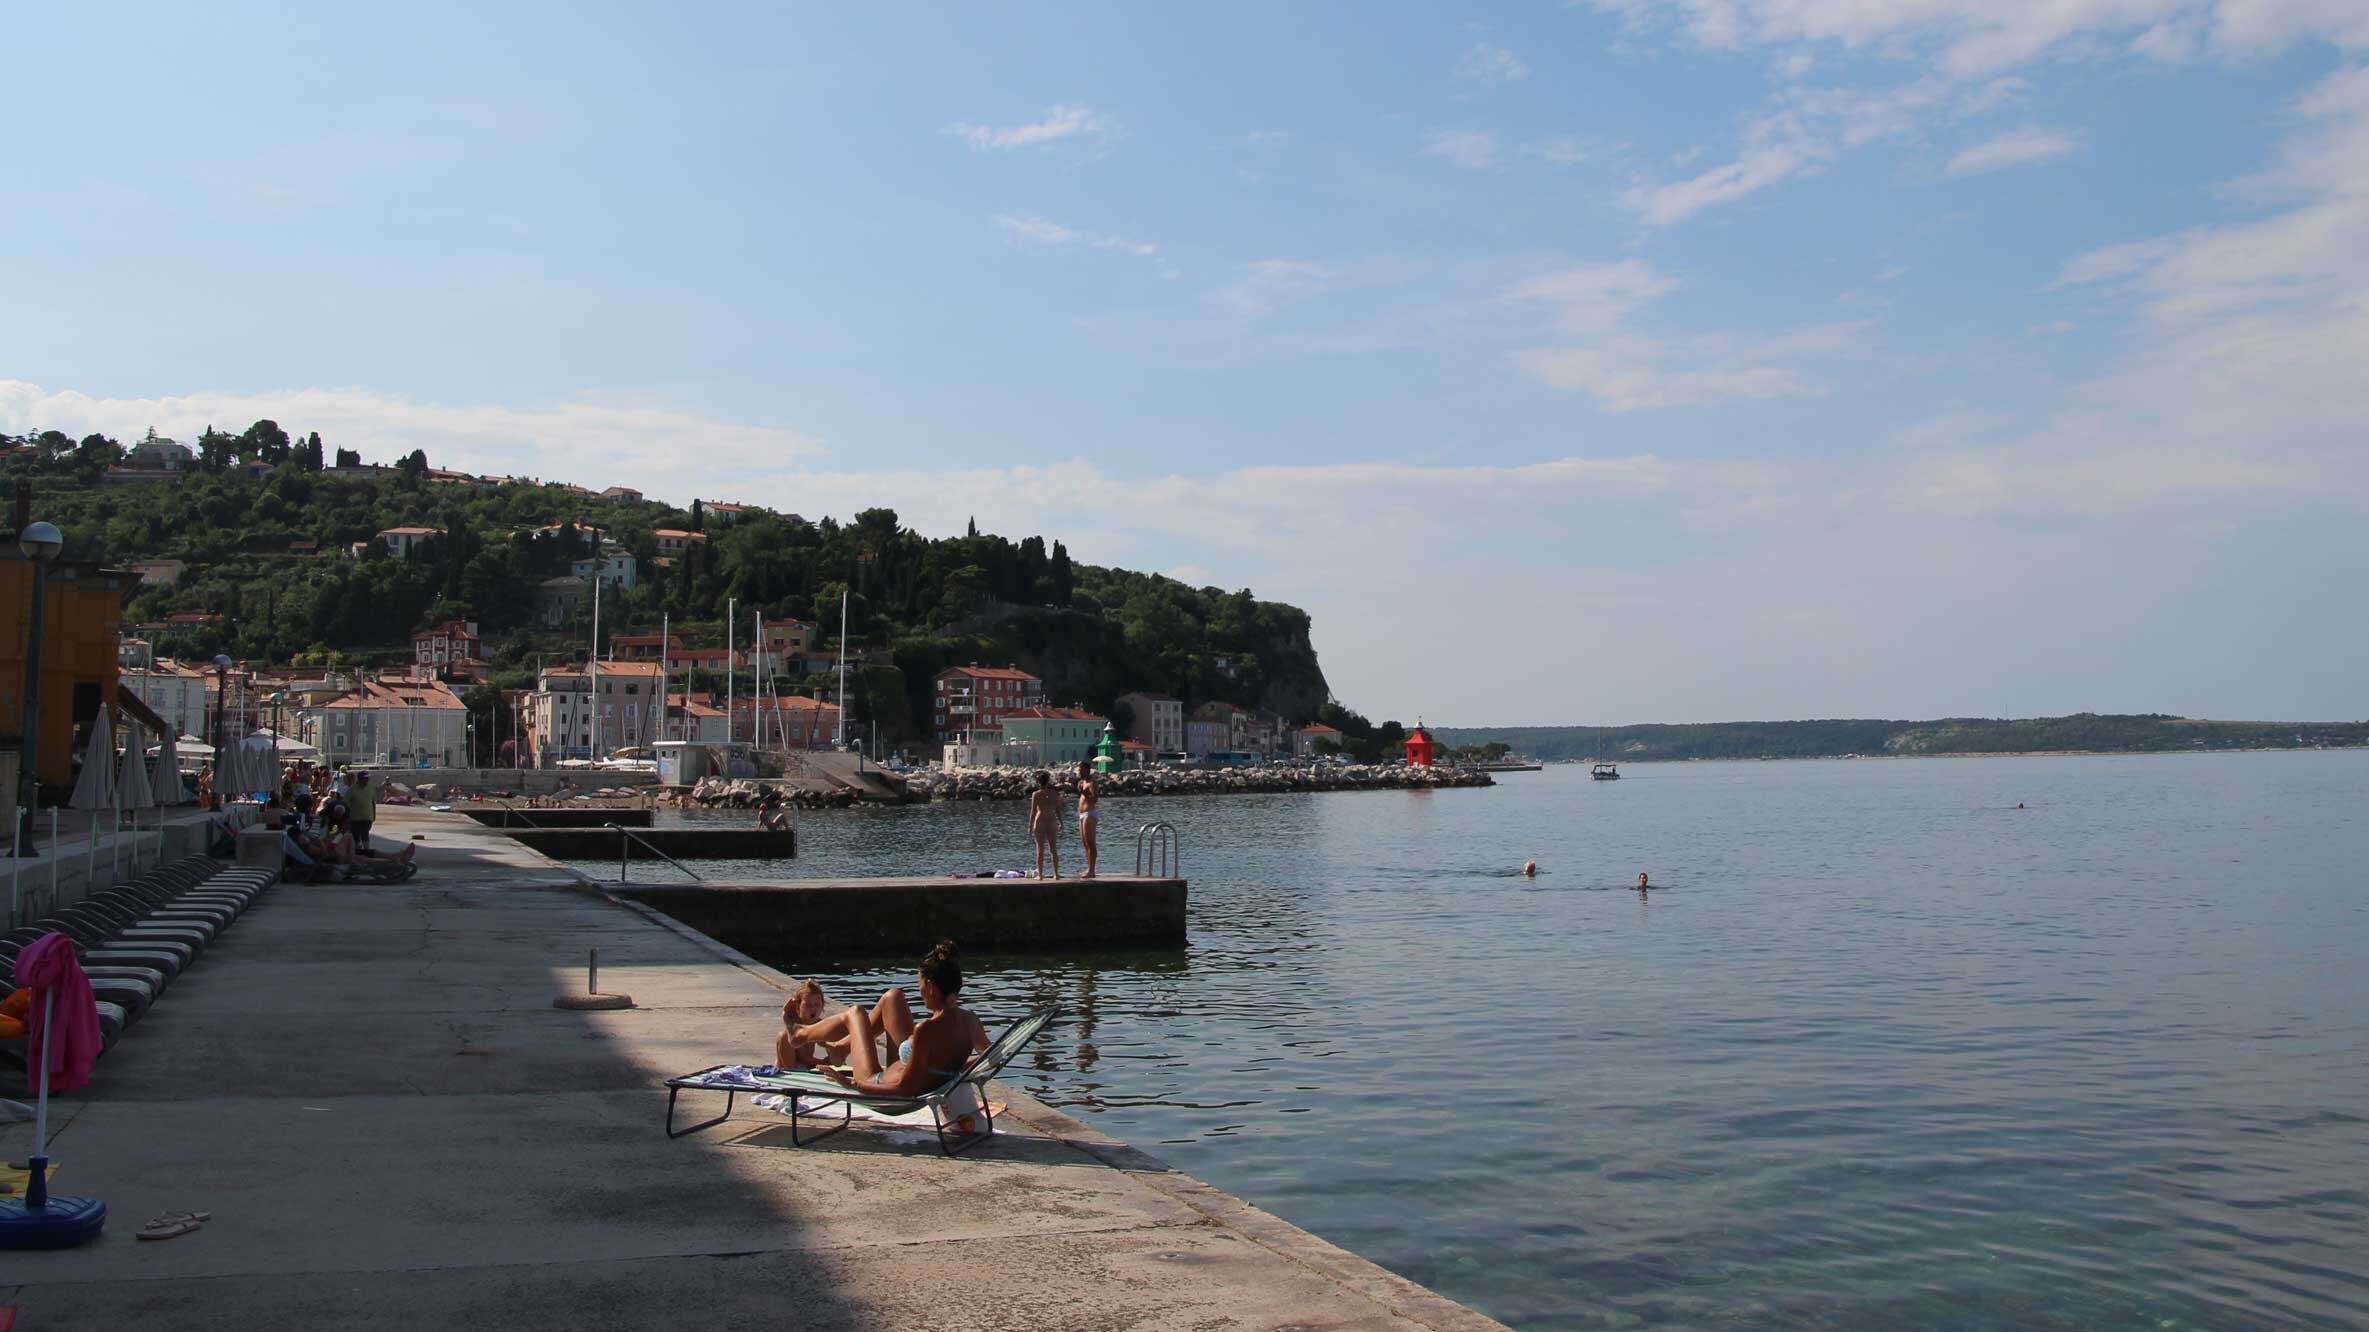 Outdoor oplevelser i Slovenien er også at hoppe i havet ved Piran.